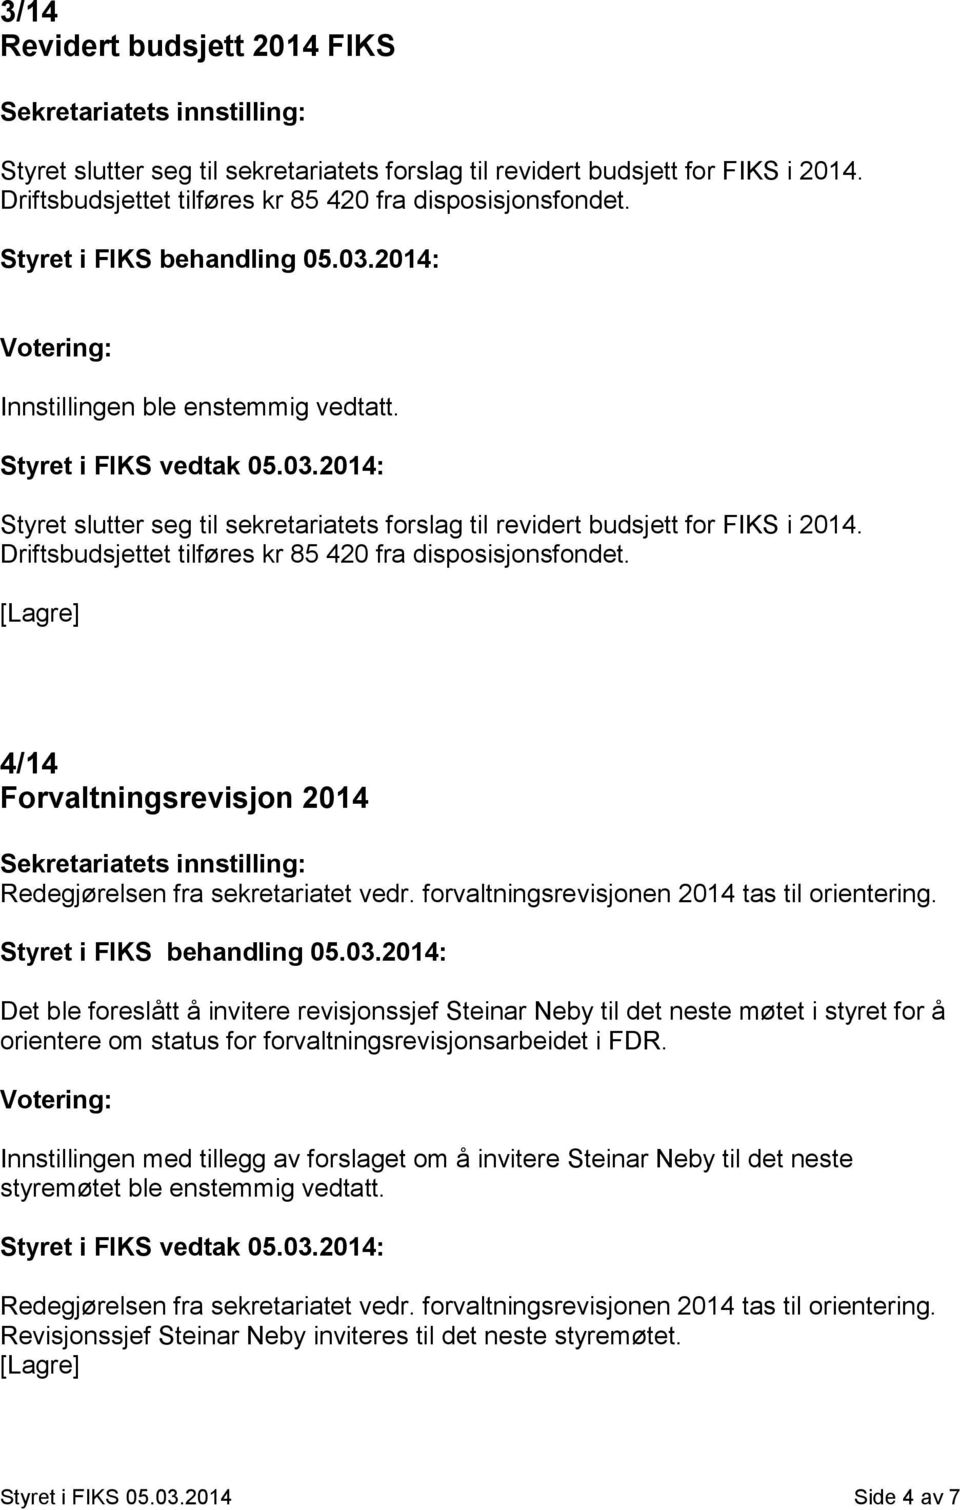 4/14 Forvaltningsrevisjon 2014 Redegjørelsen fra sekretariatet vedr. forvaltningsrevisjonen 2014 tas til orientering.